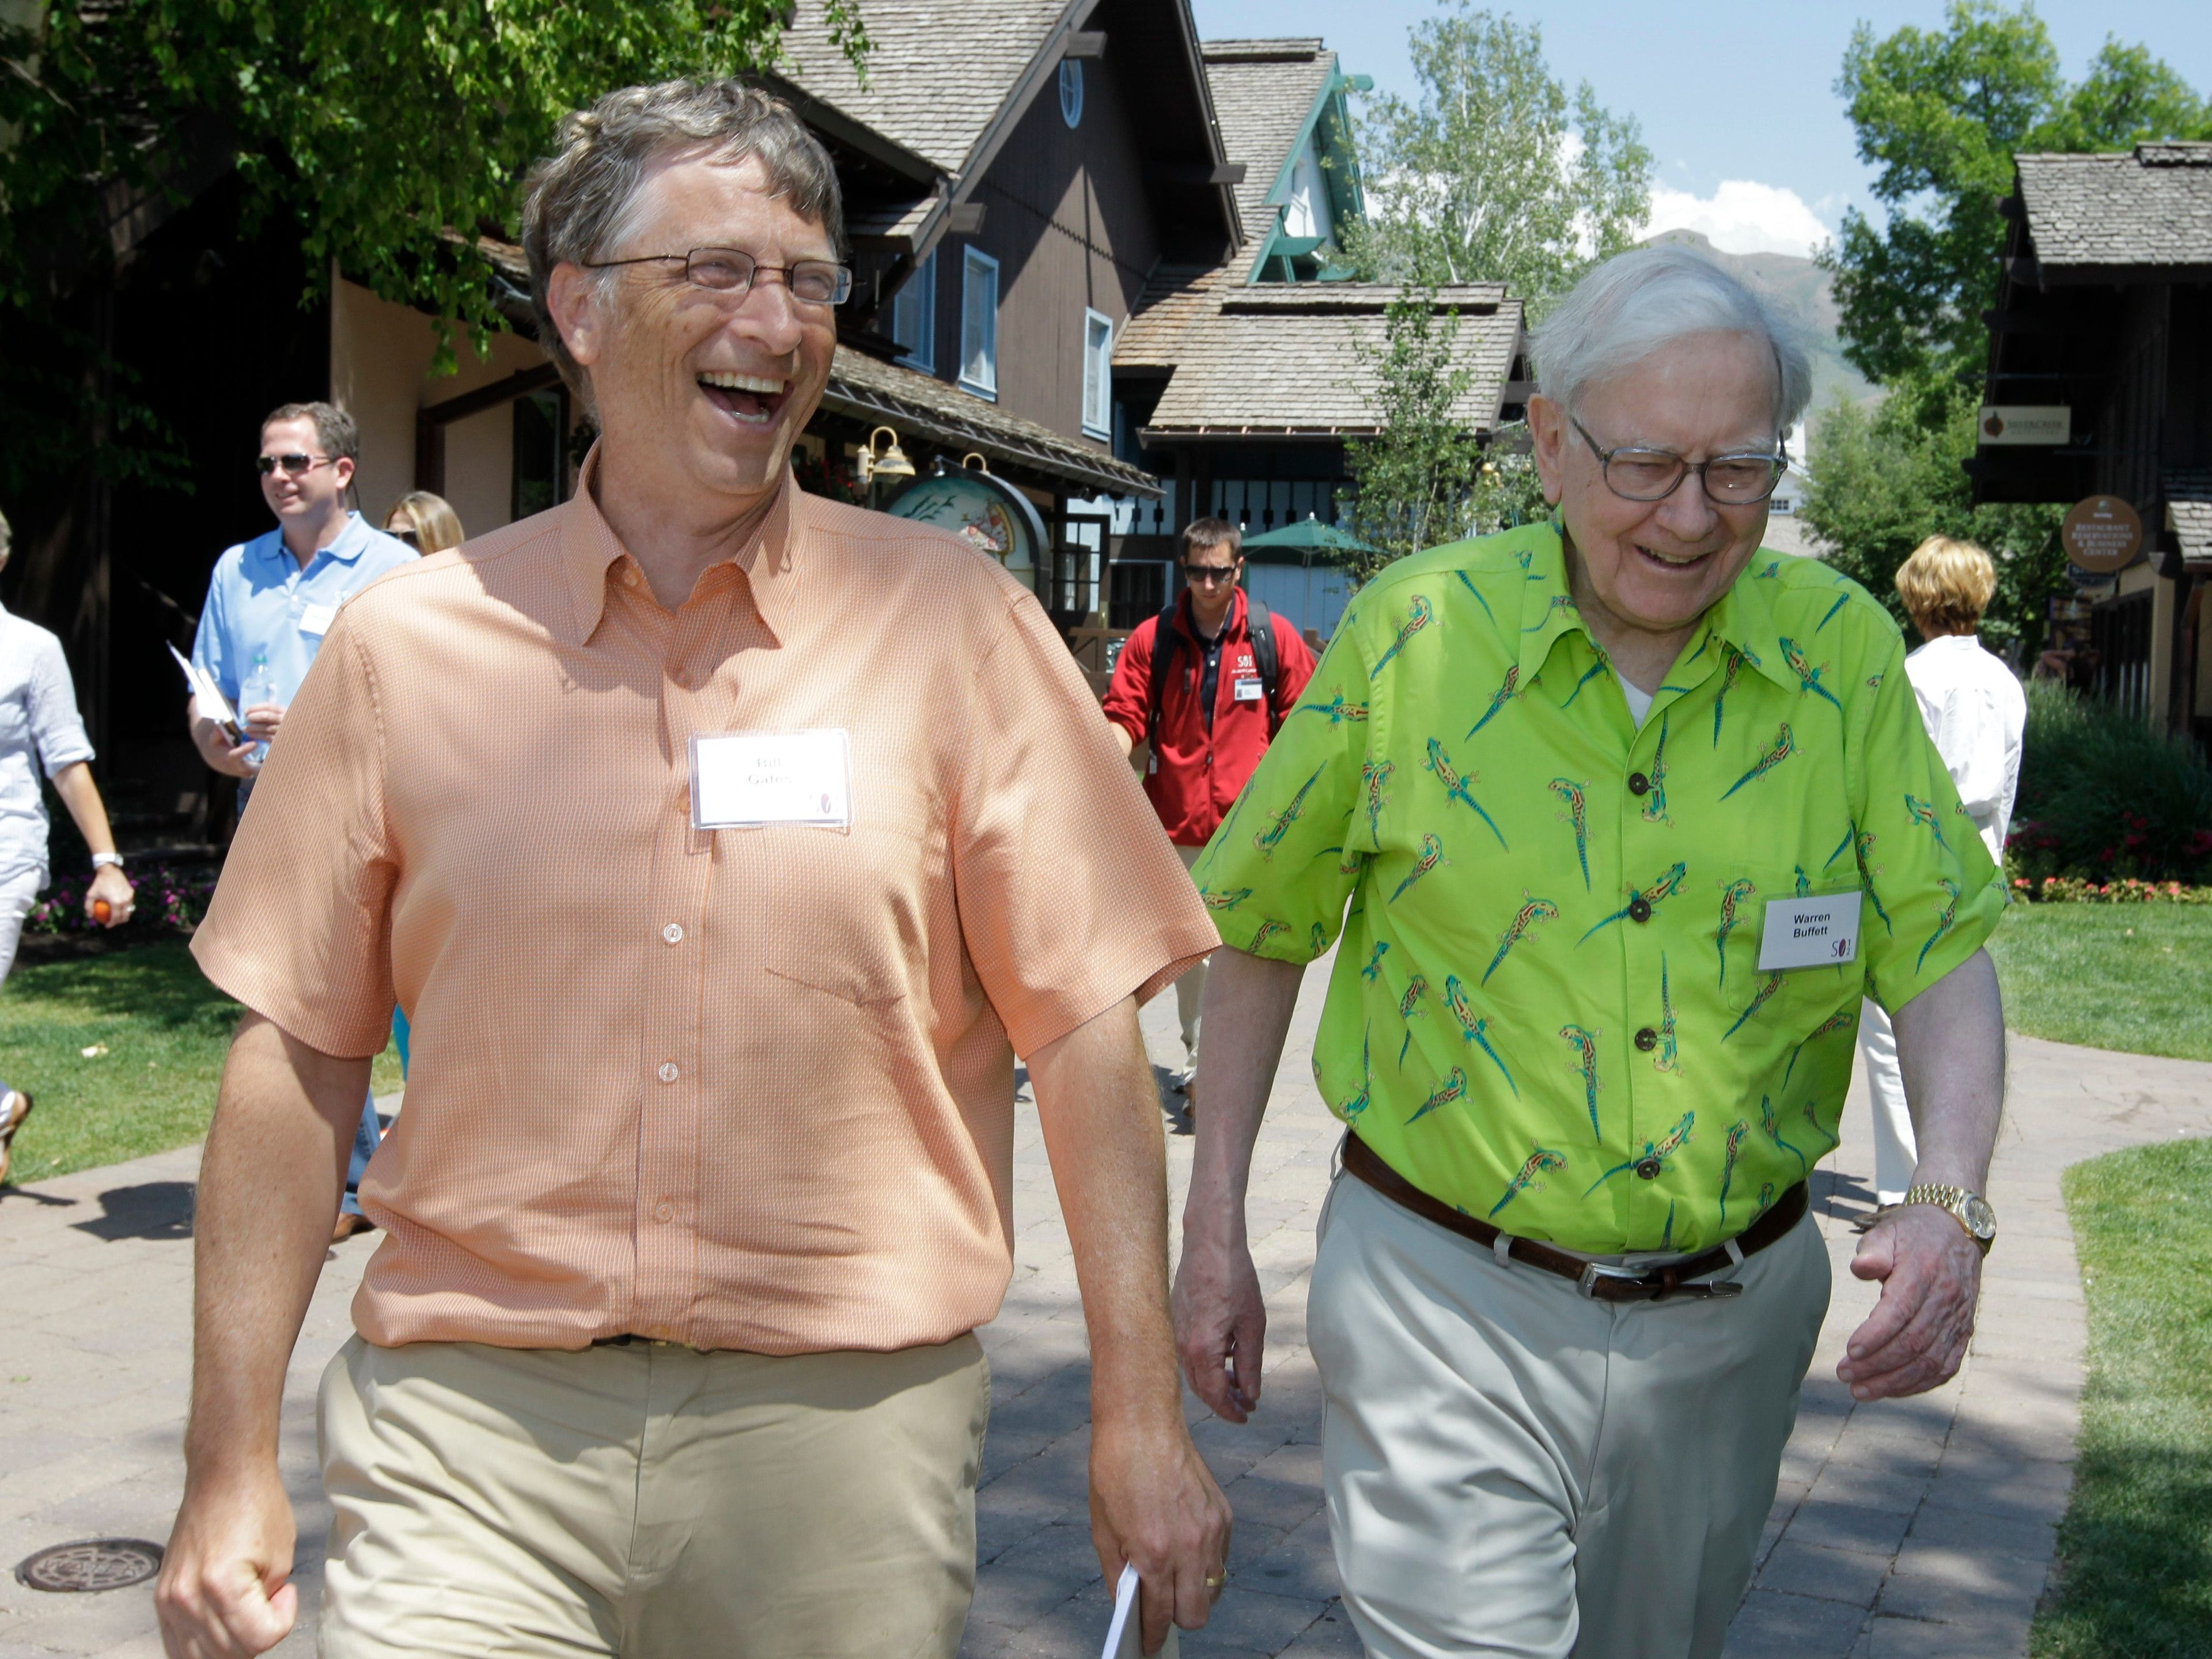 El inversor multimillonario Warren Buffett, a la derecha, y el presidente y cofundador de Microsoft, Bill Gates, a la izquierda, en la conferencia Allen & Company Sun Valley el 12 de julio de 2012.